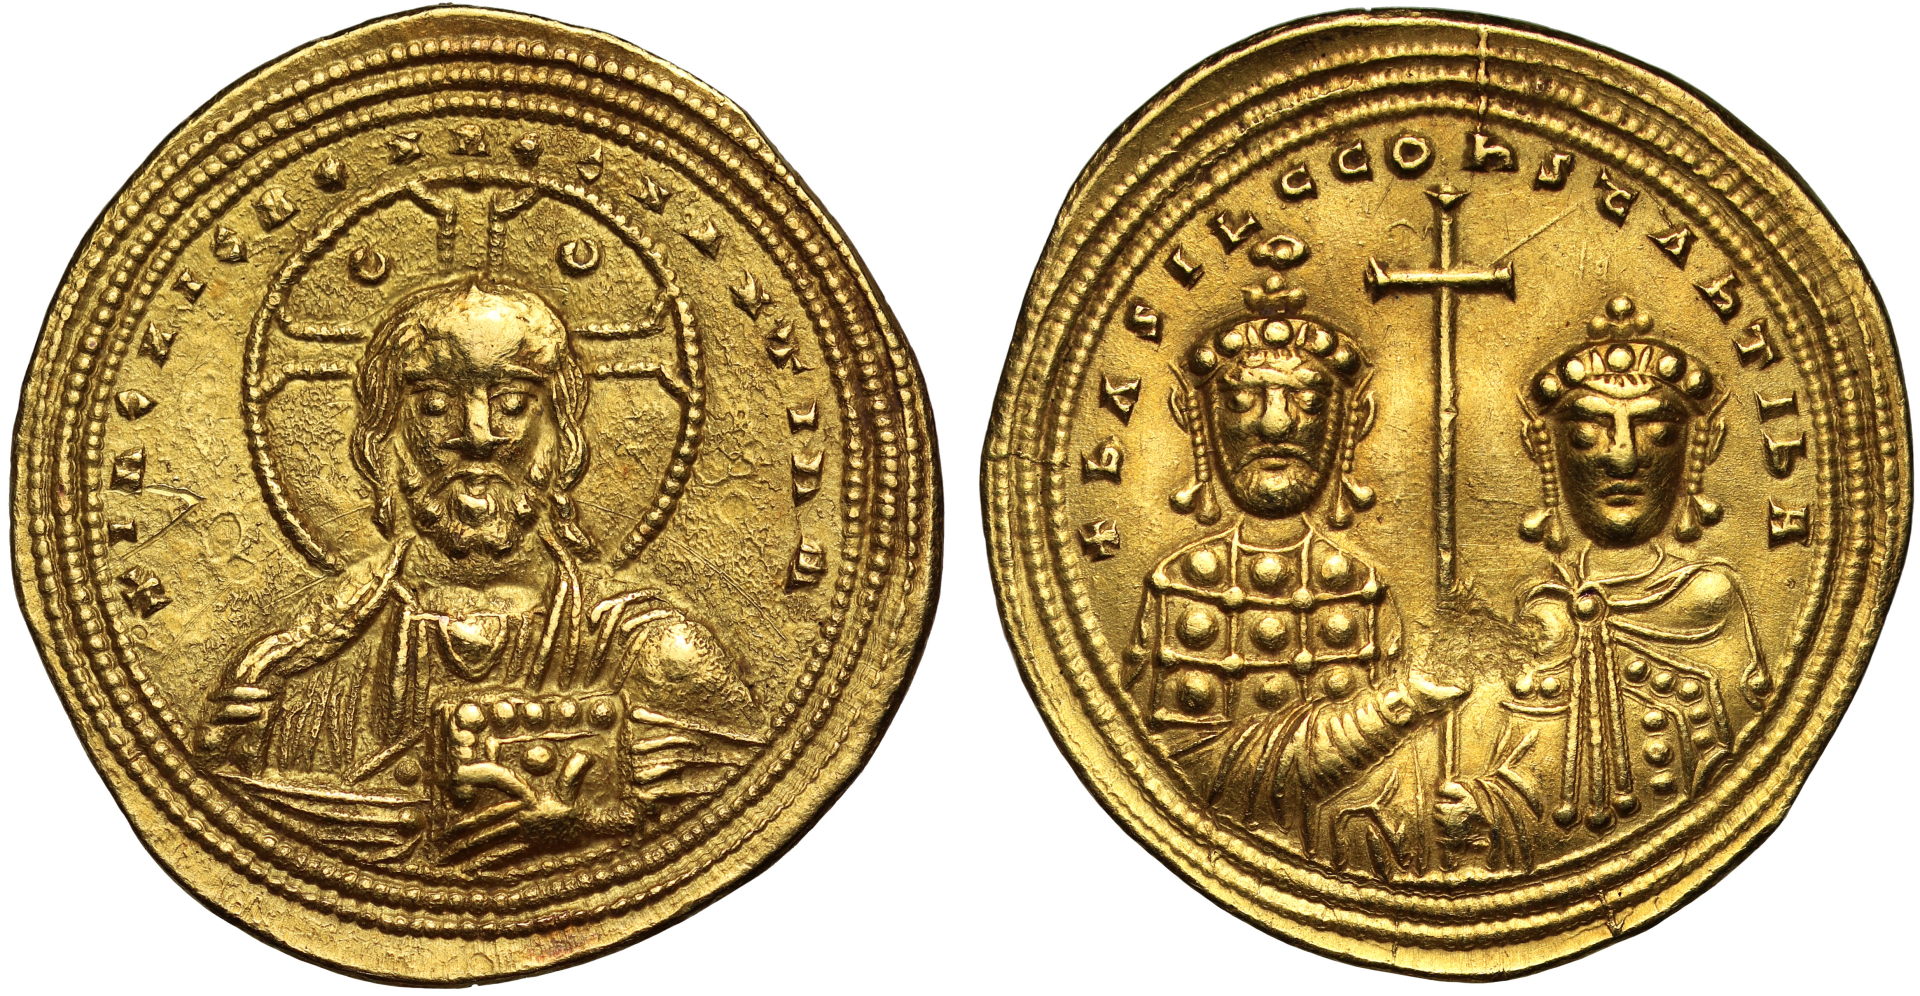 Đồng tiền vàng quý hiếm 1000 năm tuổi được tìm thấy, gương mặt được in phía trên khiến giới khoa học sửng sốt - ảnh 3